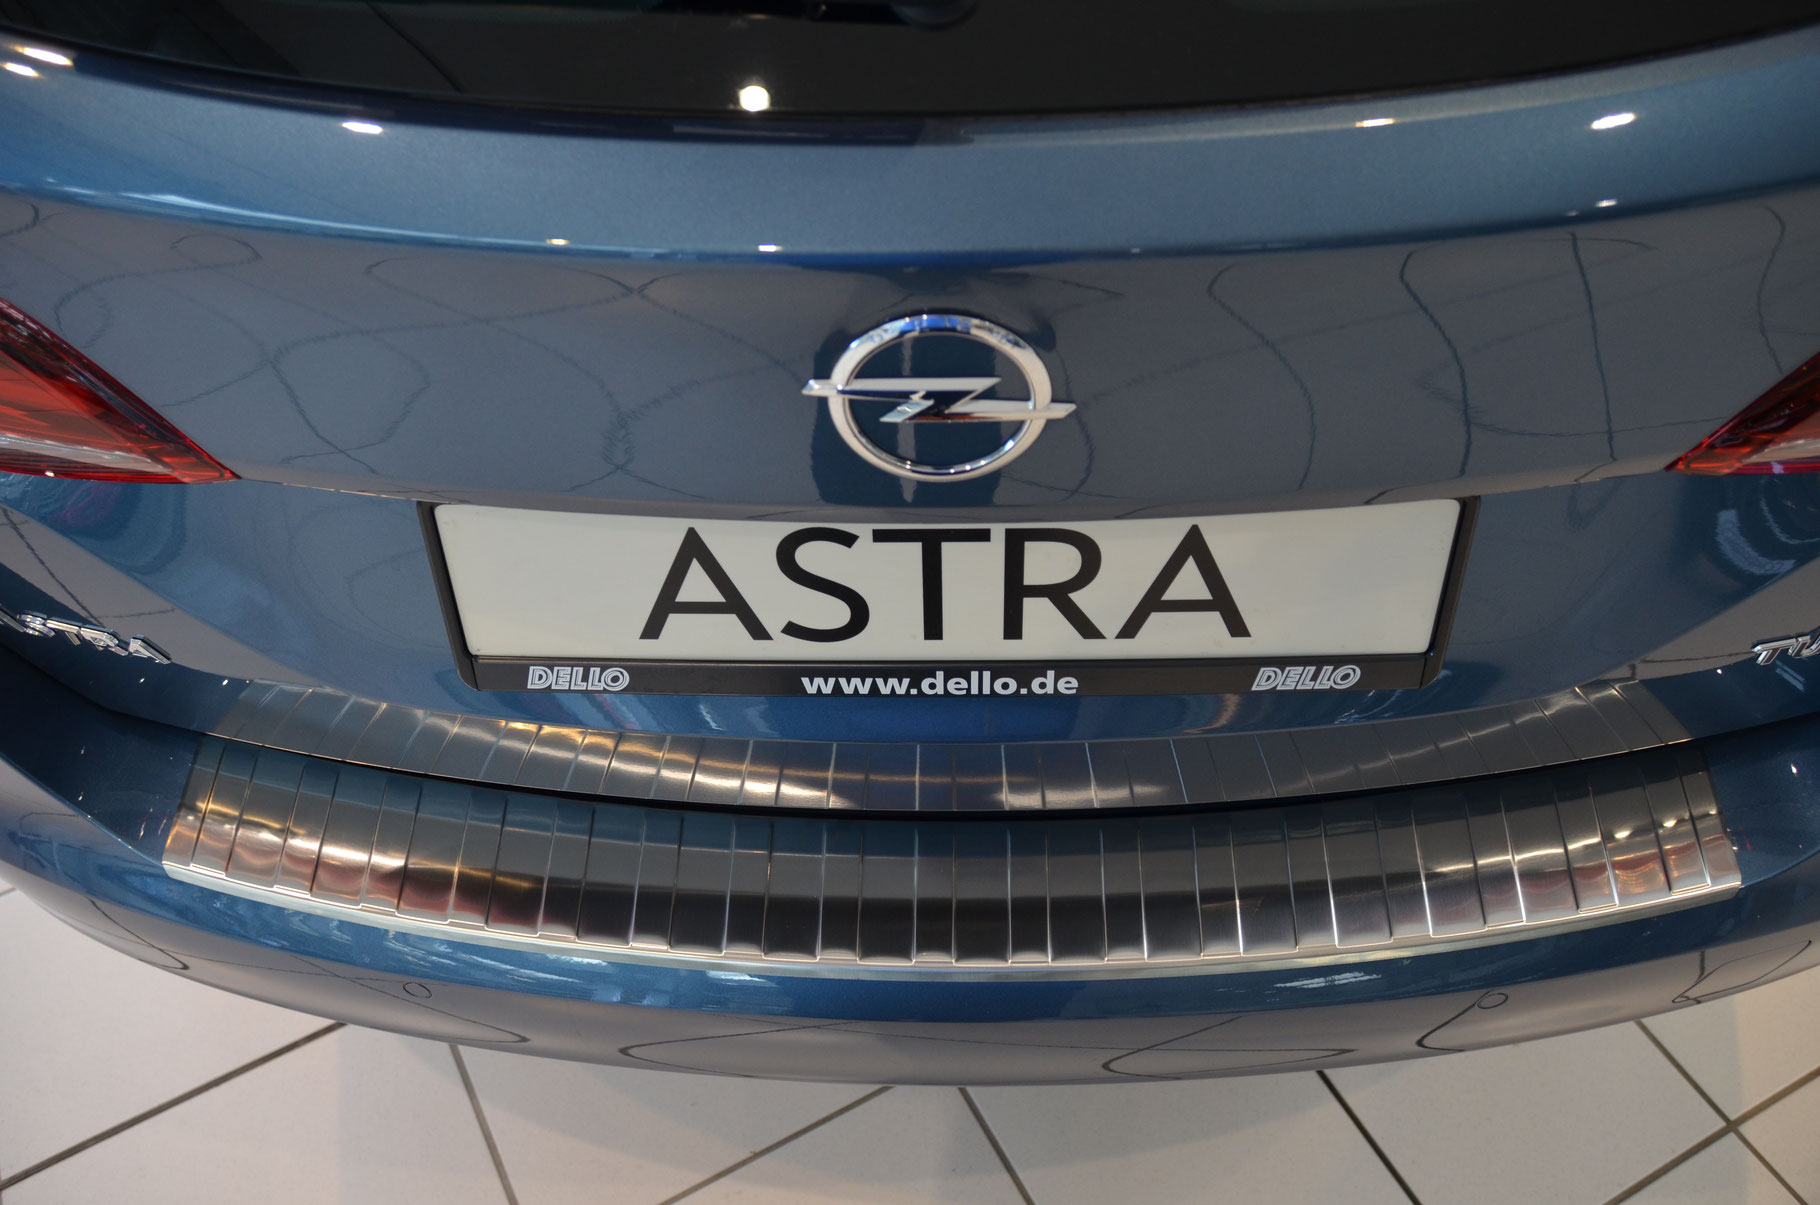 K Ladekante Schutz - für Astra Opel Fahrzeuges für Ihres Ladekantenschutz die